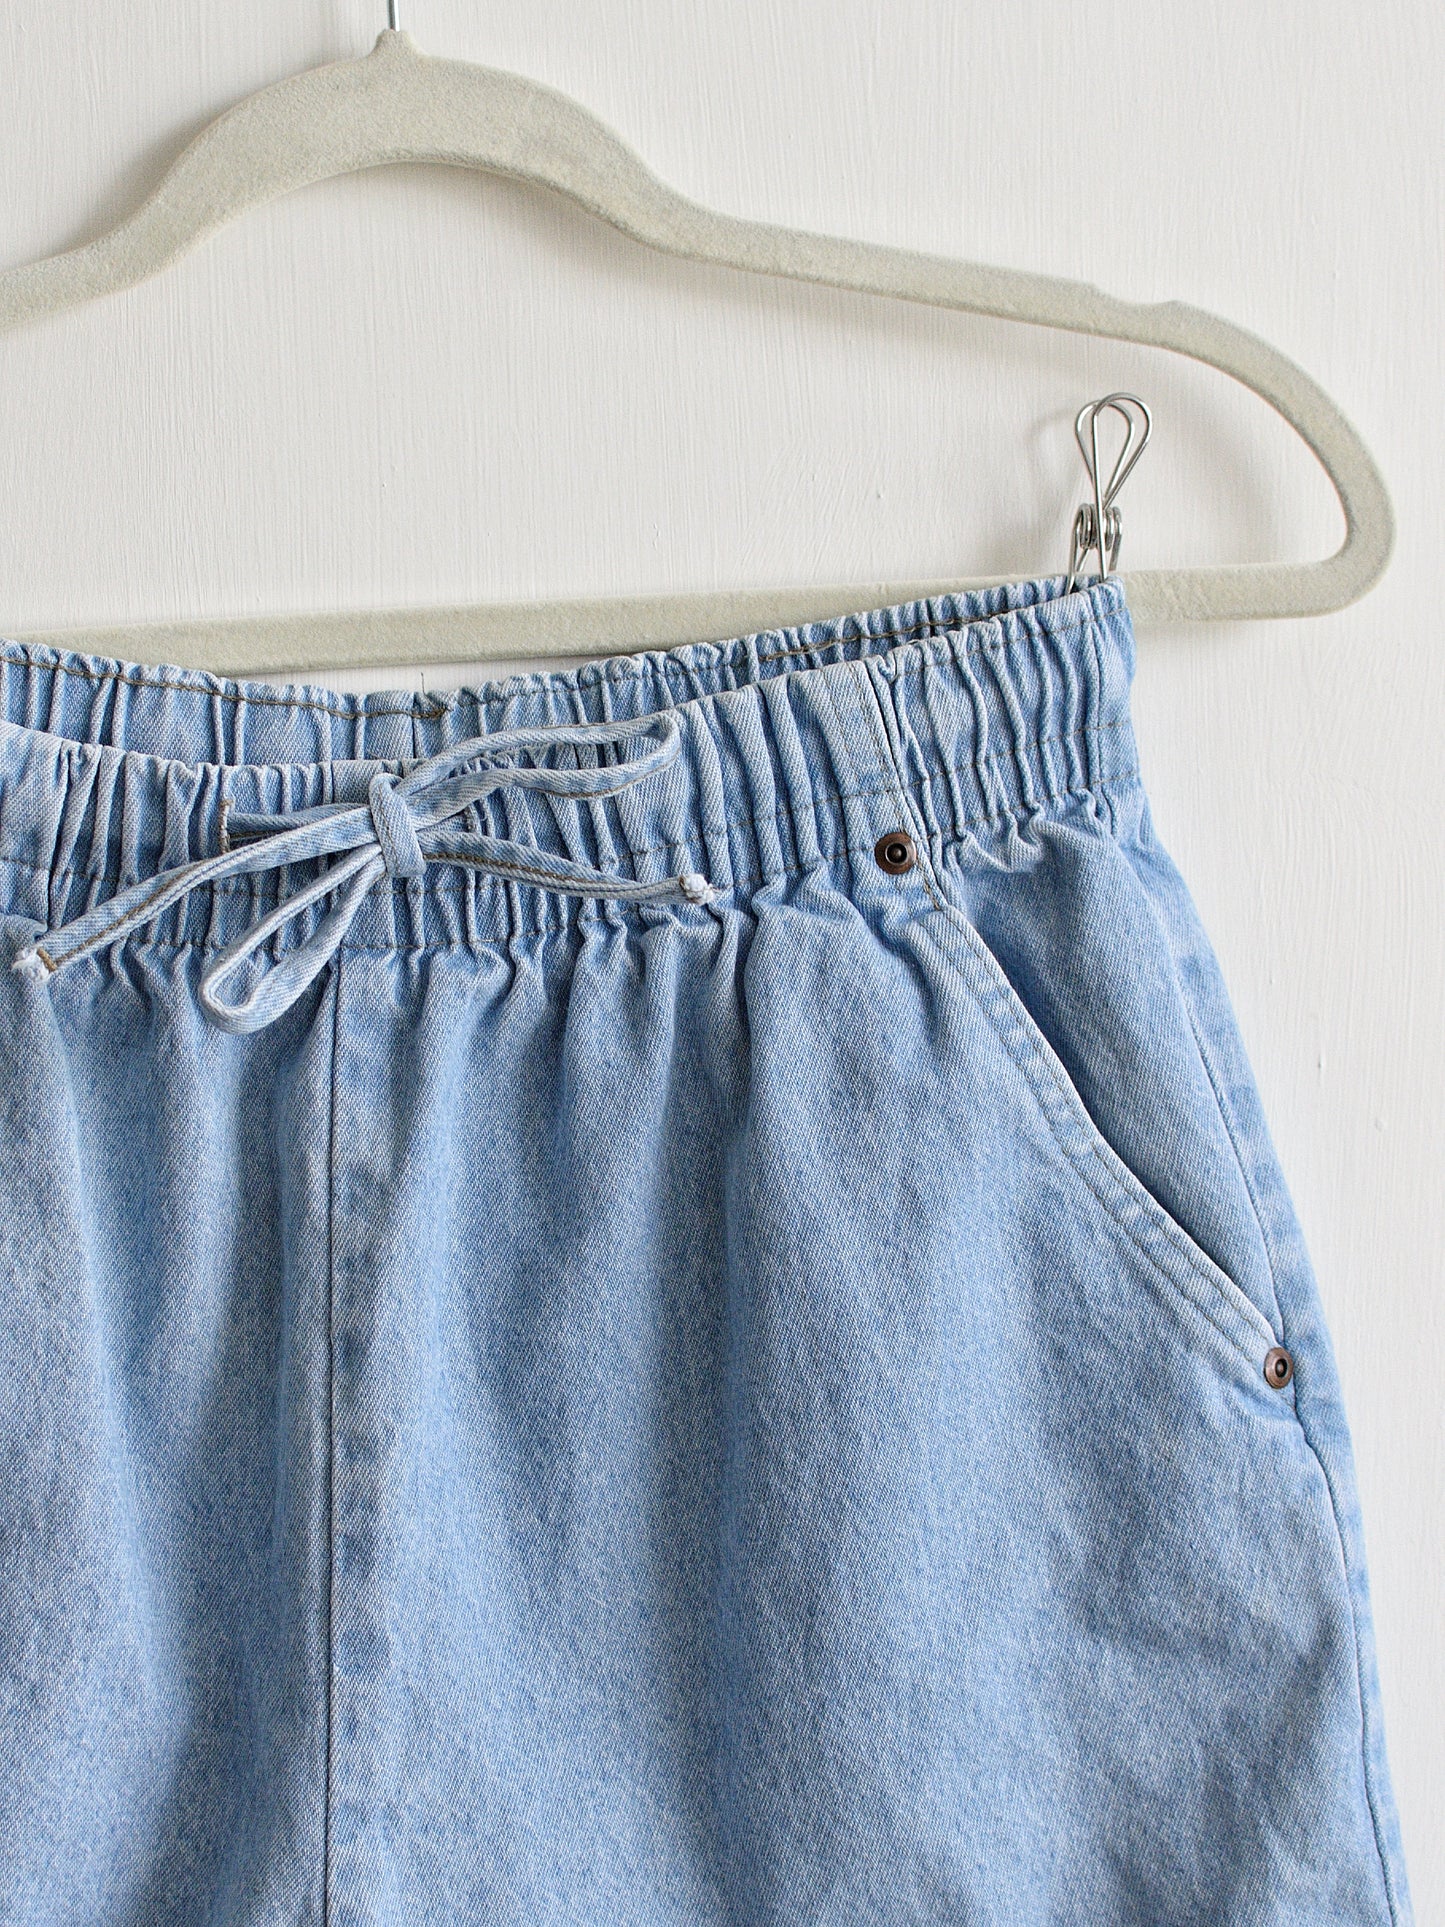 Small/Medium Denim Shorts